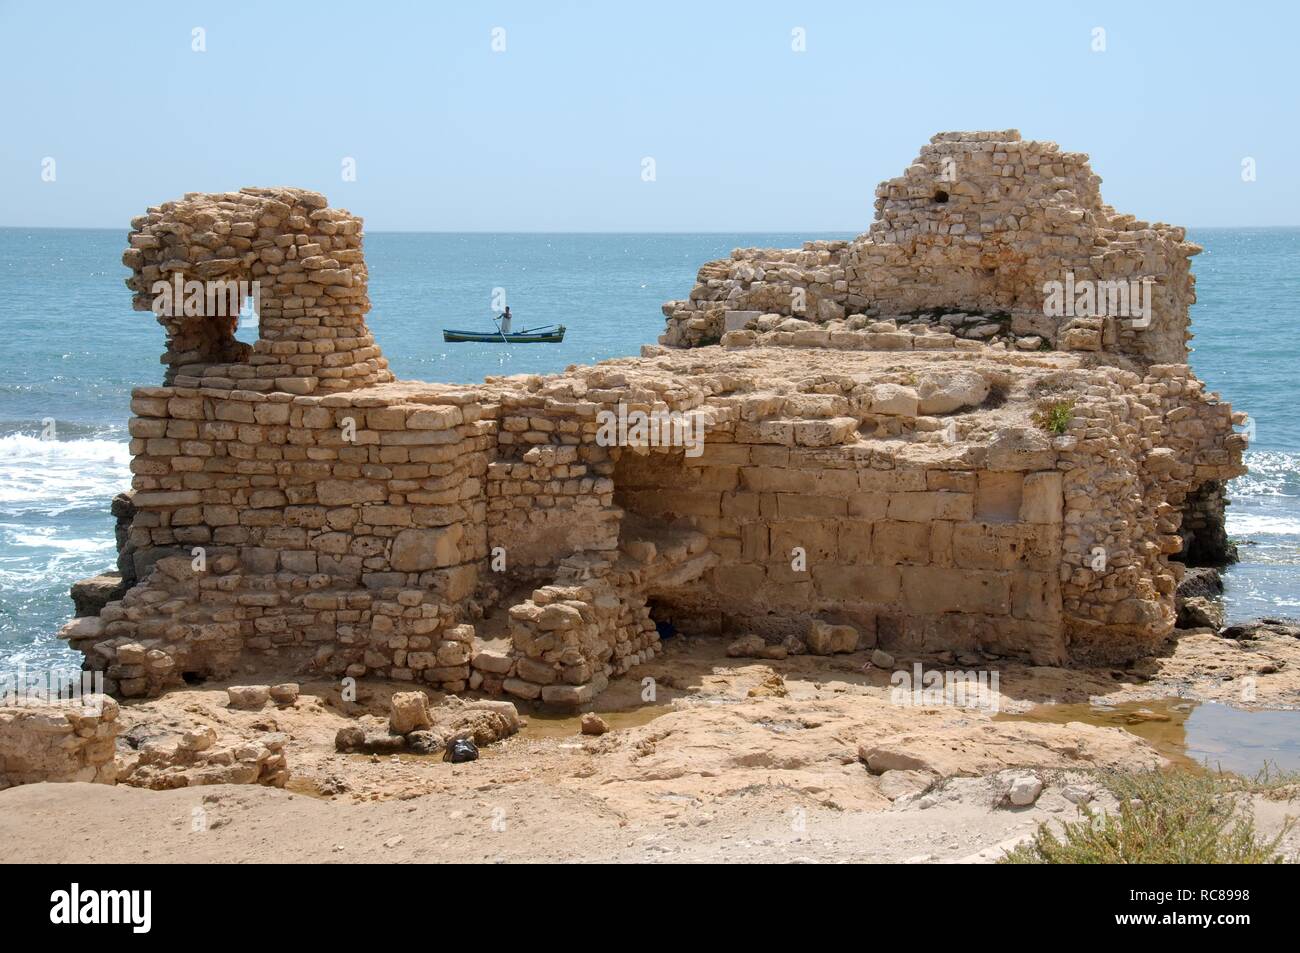 Ruin on the beach, Mahdia, Tunis, Africa Stock Photo